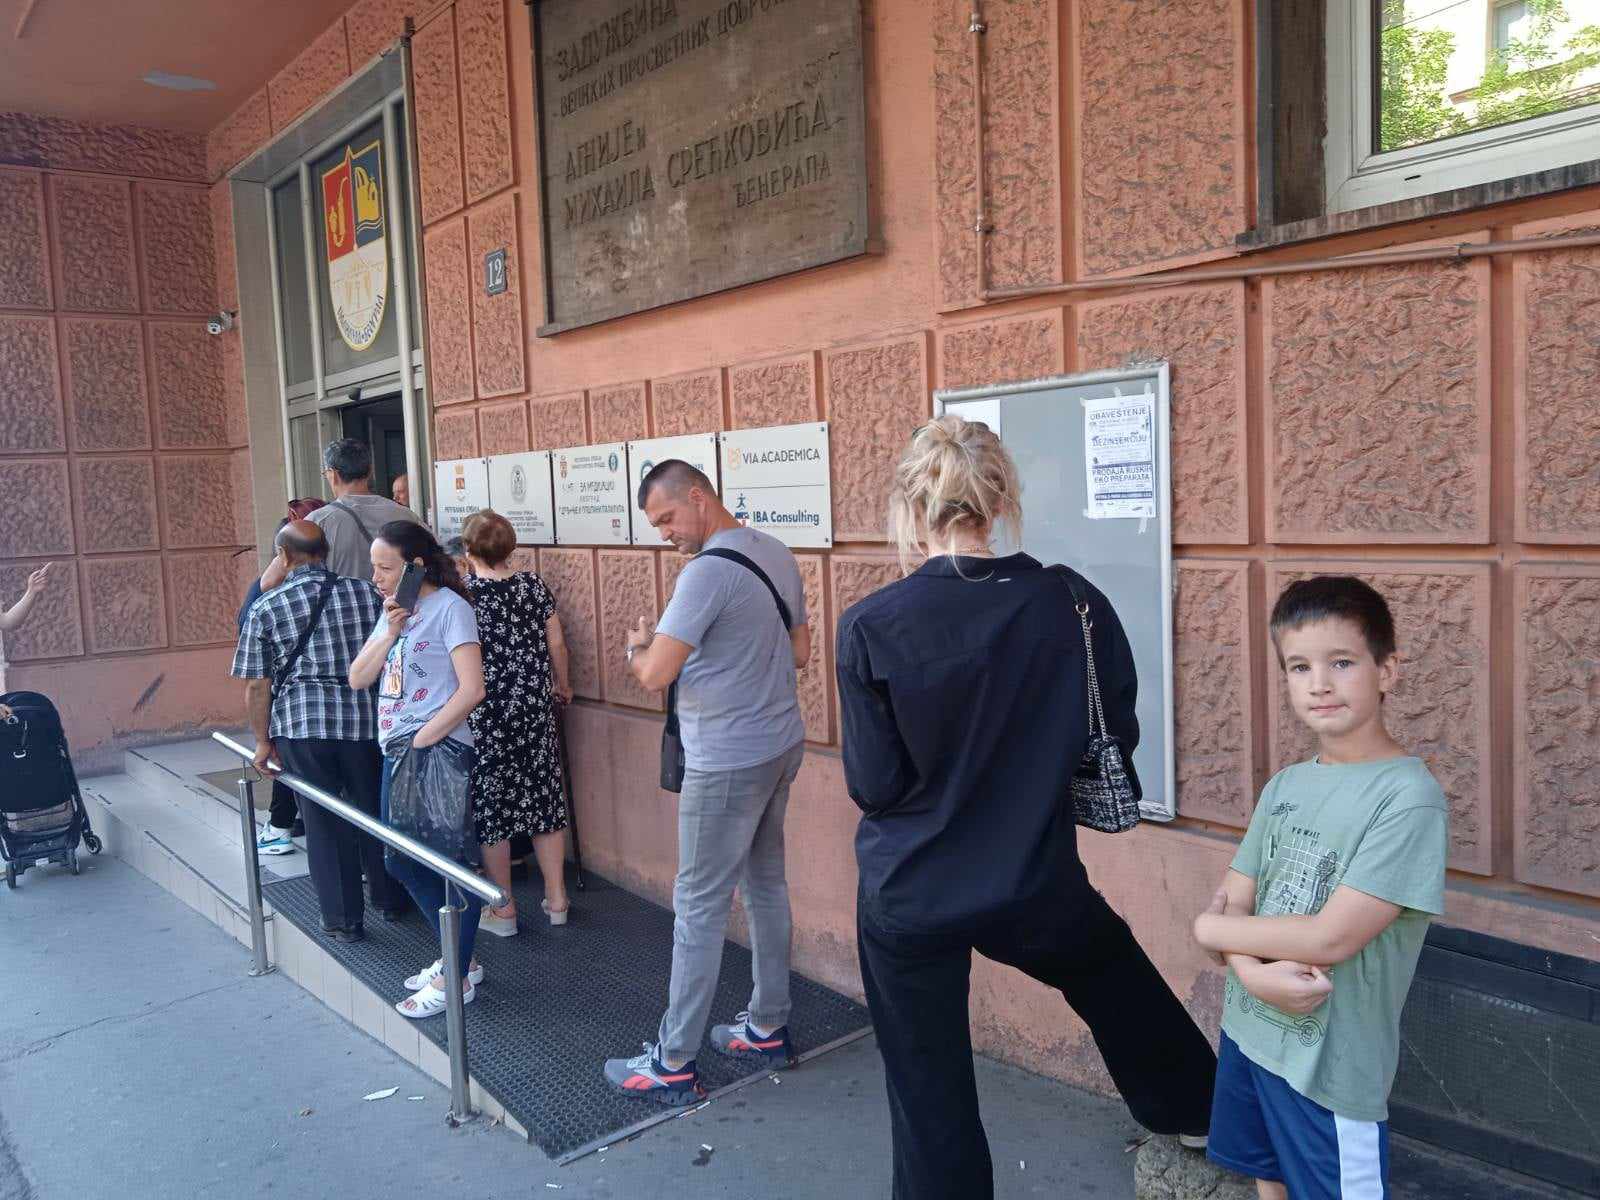 "Jedan šalter za sve, a sistem pada": Na besplatne kartice za bazene Beograđani čekaju i po tri sata (FOTO) 2